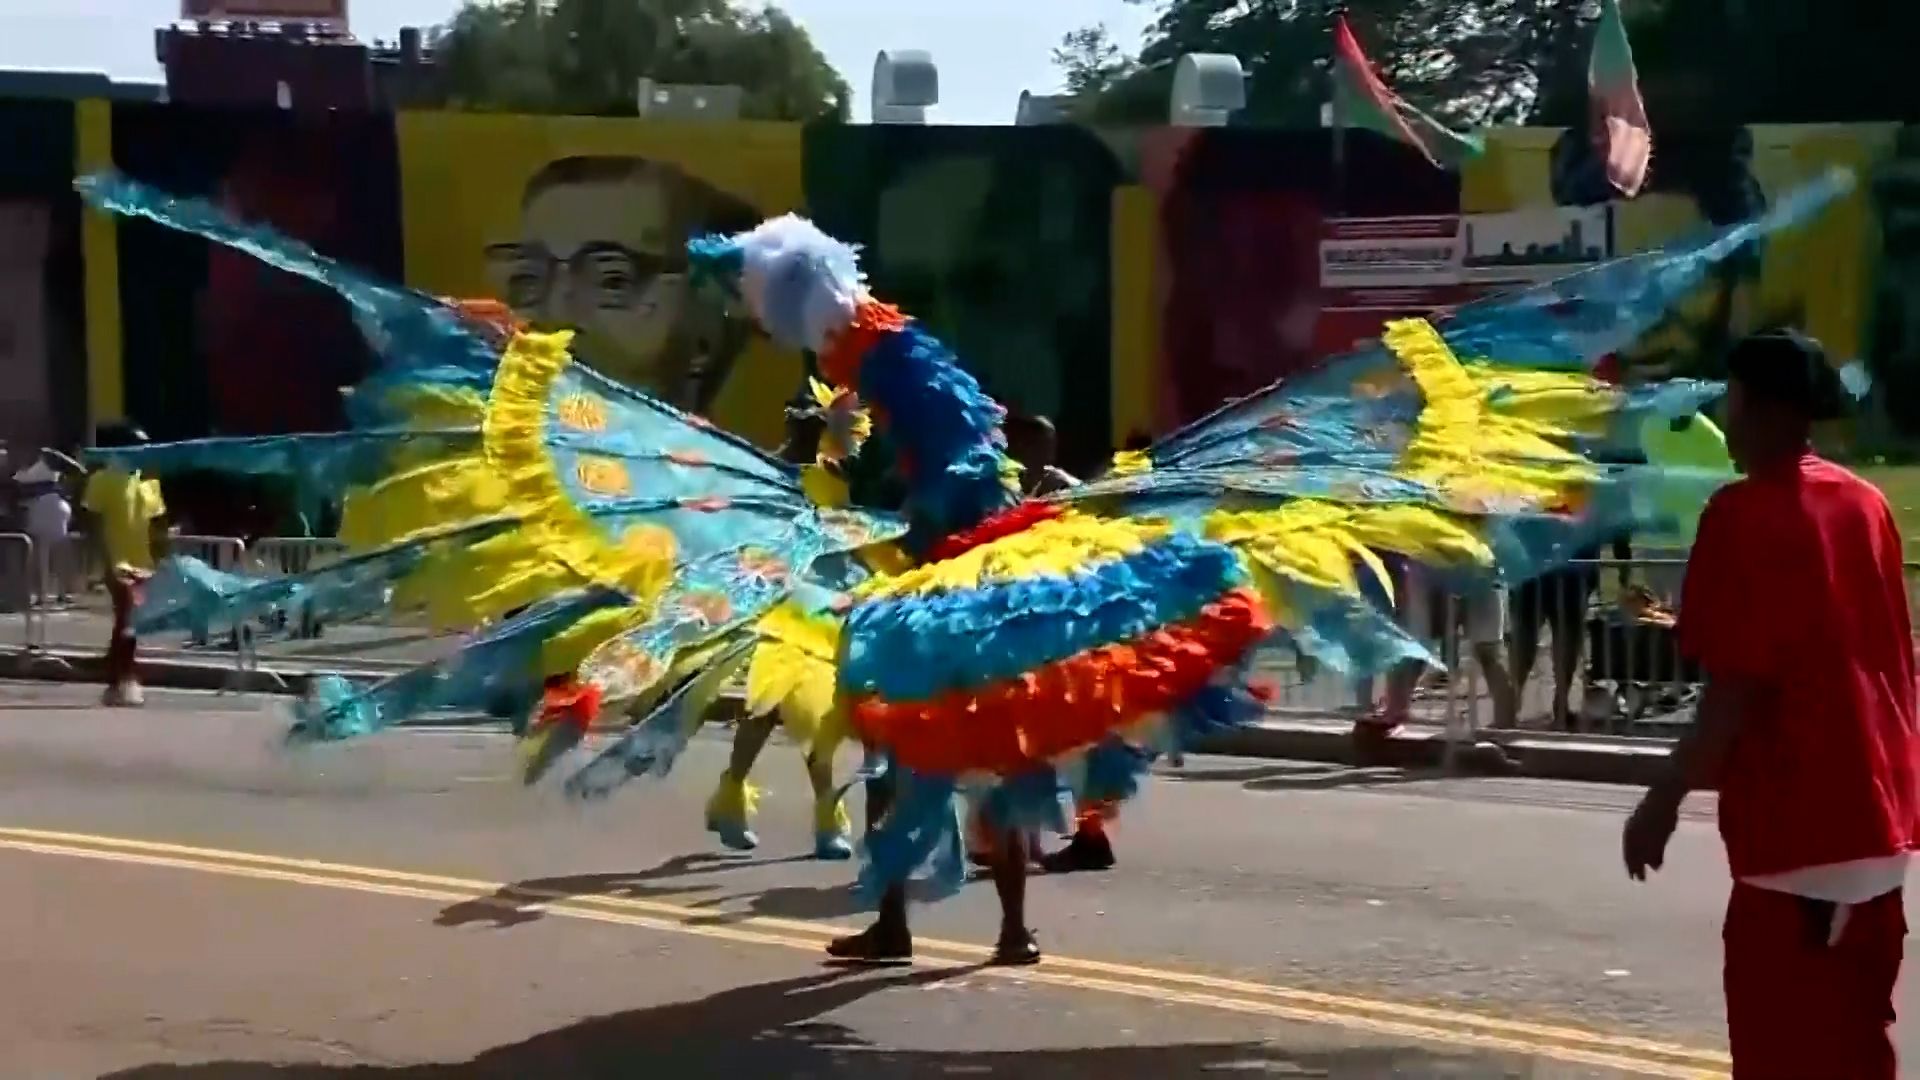 Full-fledged Caribbean Carnival celebration returns to Boston